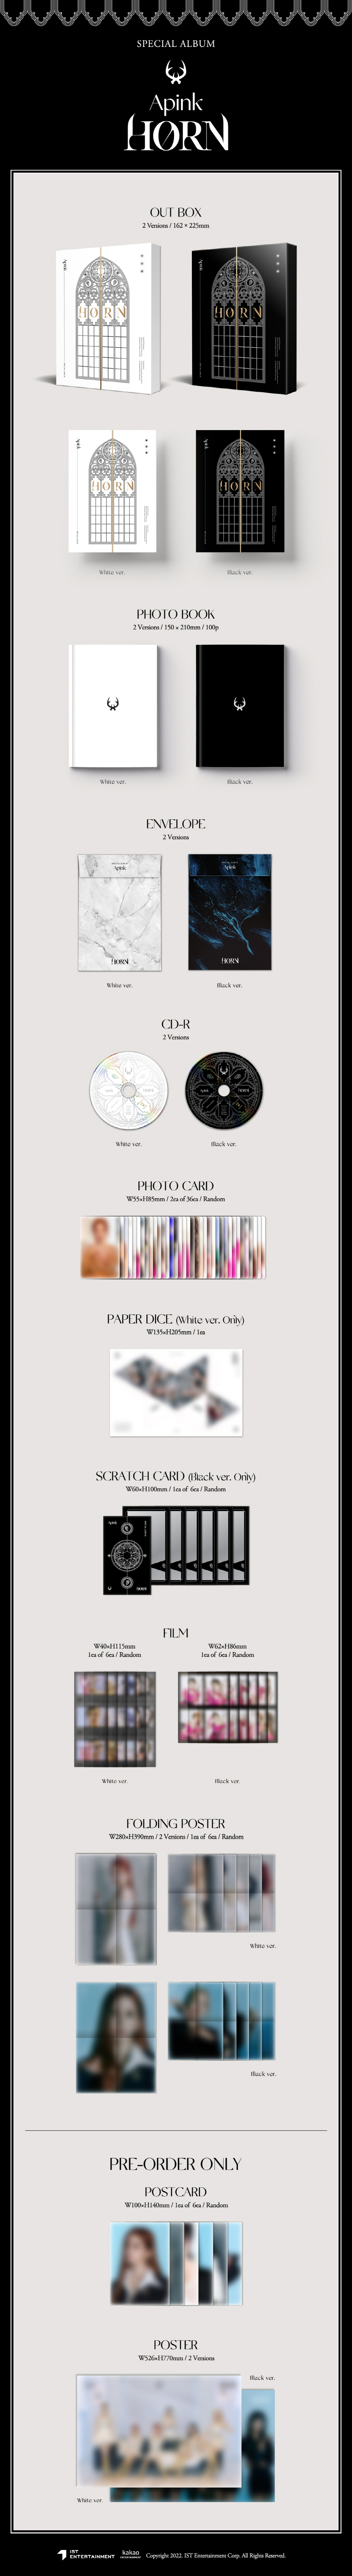 APINK - Special Album [HORN] (Black ver.) APINK HORN APINKalbum APINKcd HORNalbum album cd poster Photobook 